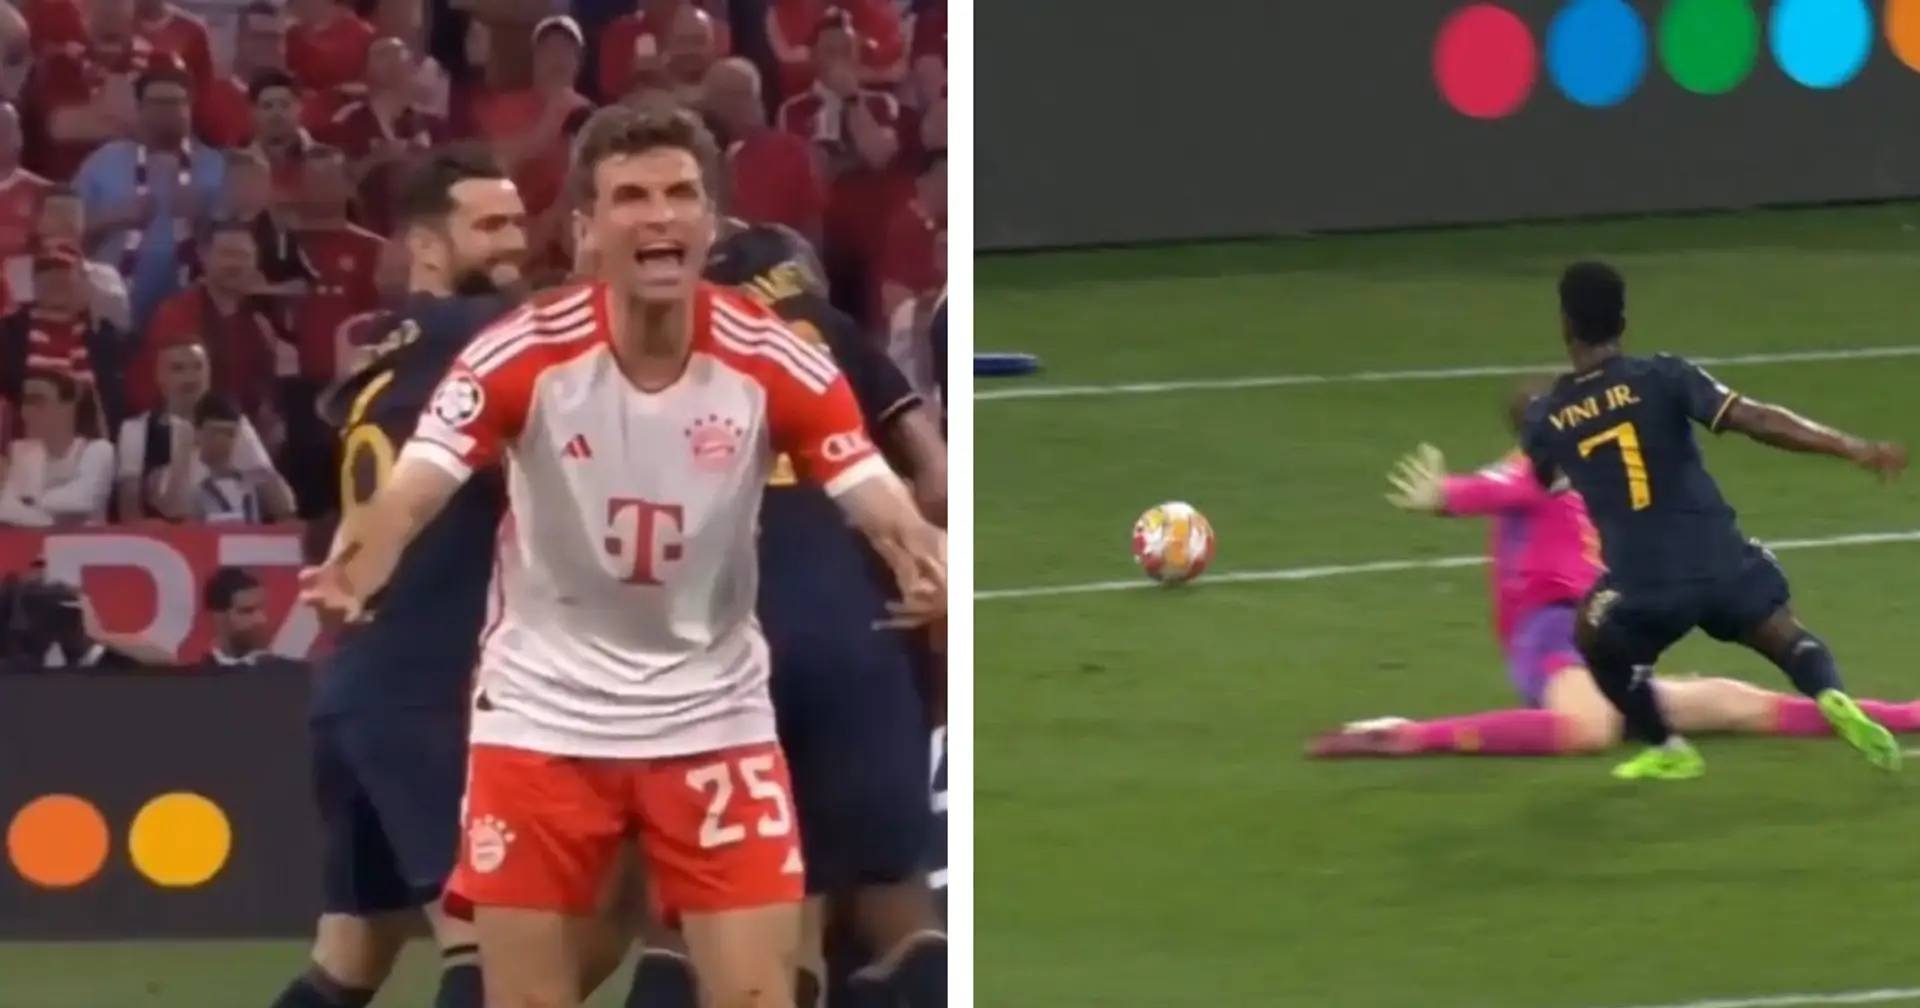 "C'est quoi ce bordel" : la réaction hilarante de Muller au but de Vinicius - repérée